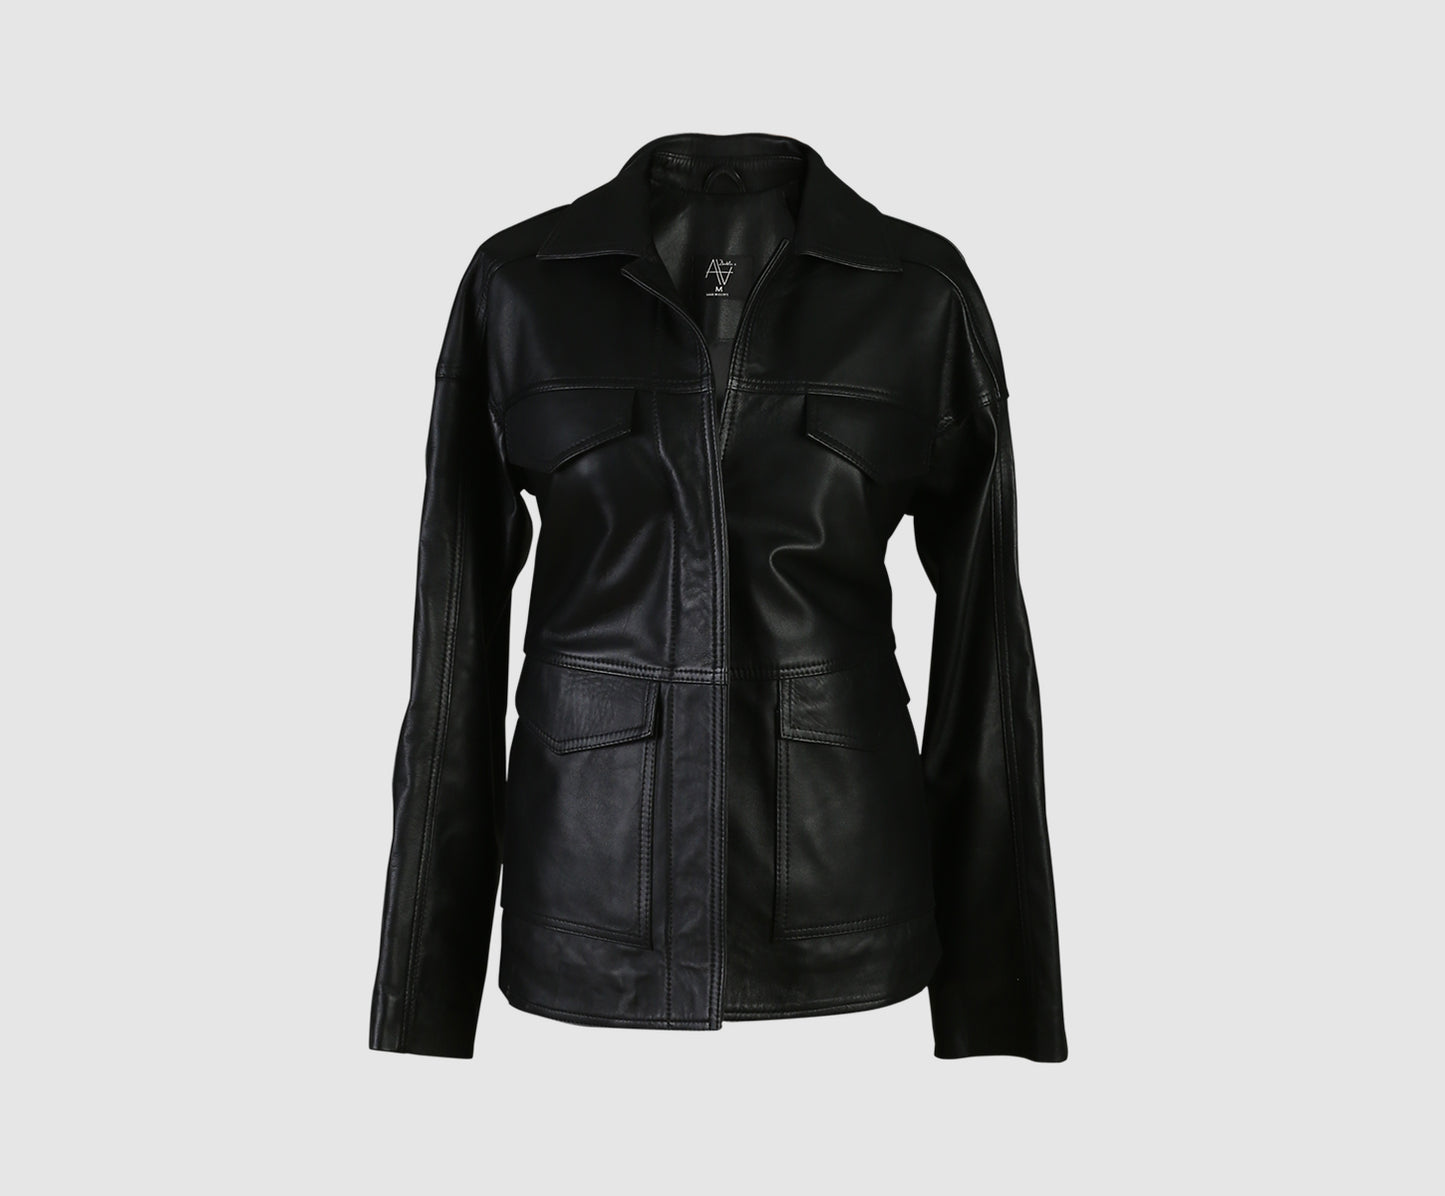 Sienna Leather Jacket Black